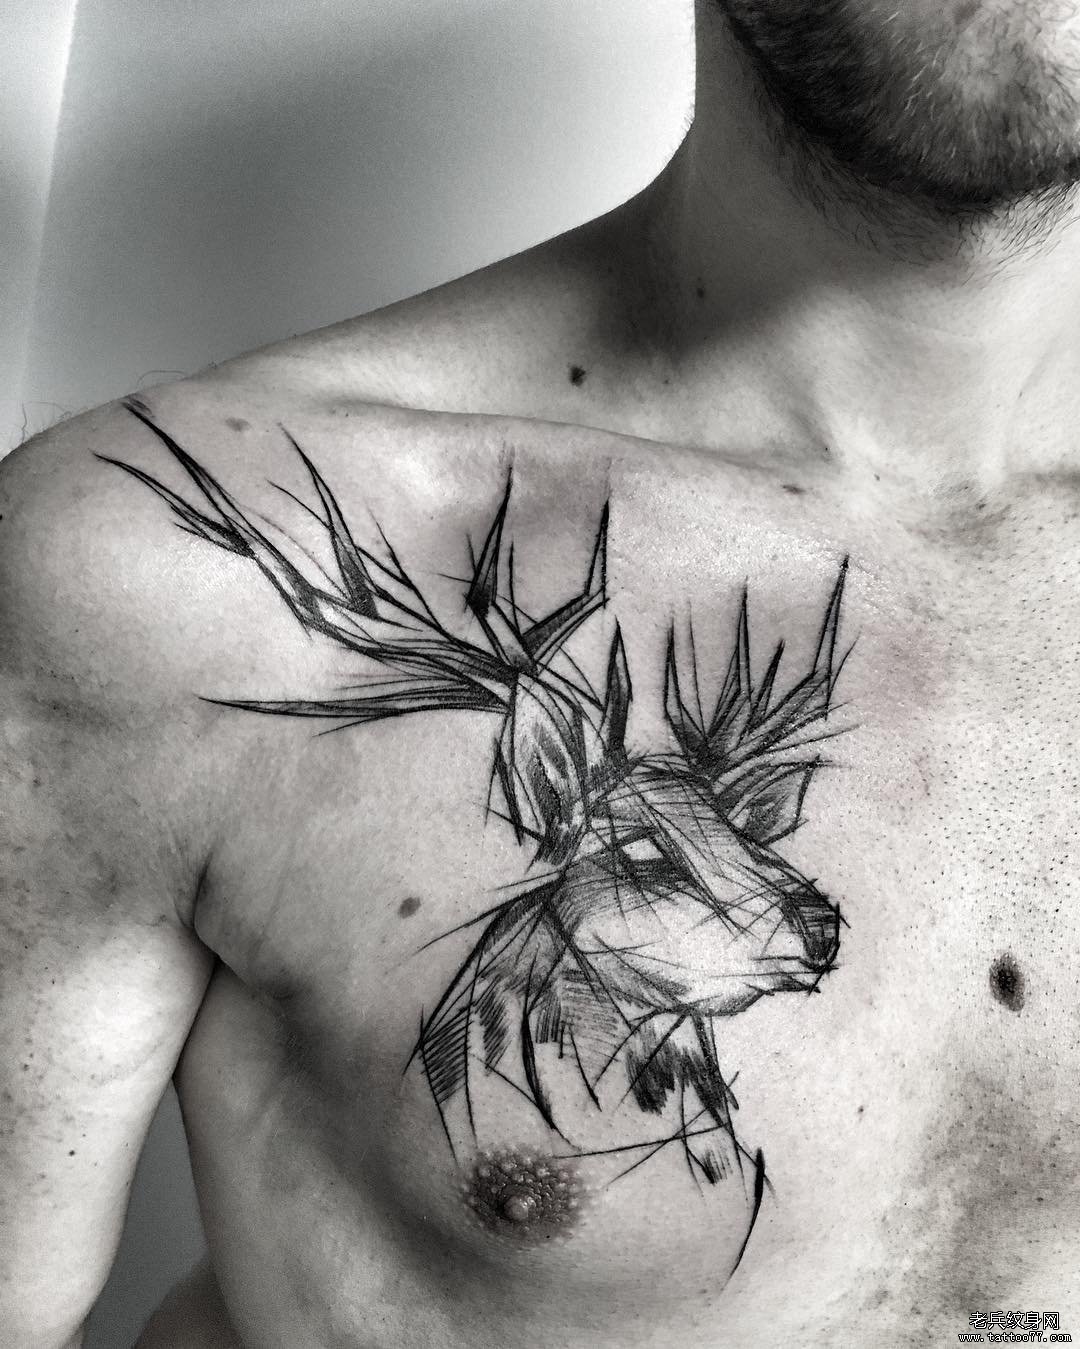 男性胸部麋鹿钢笔画风格纹身图案